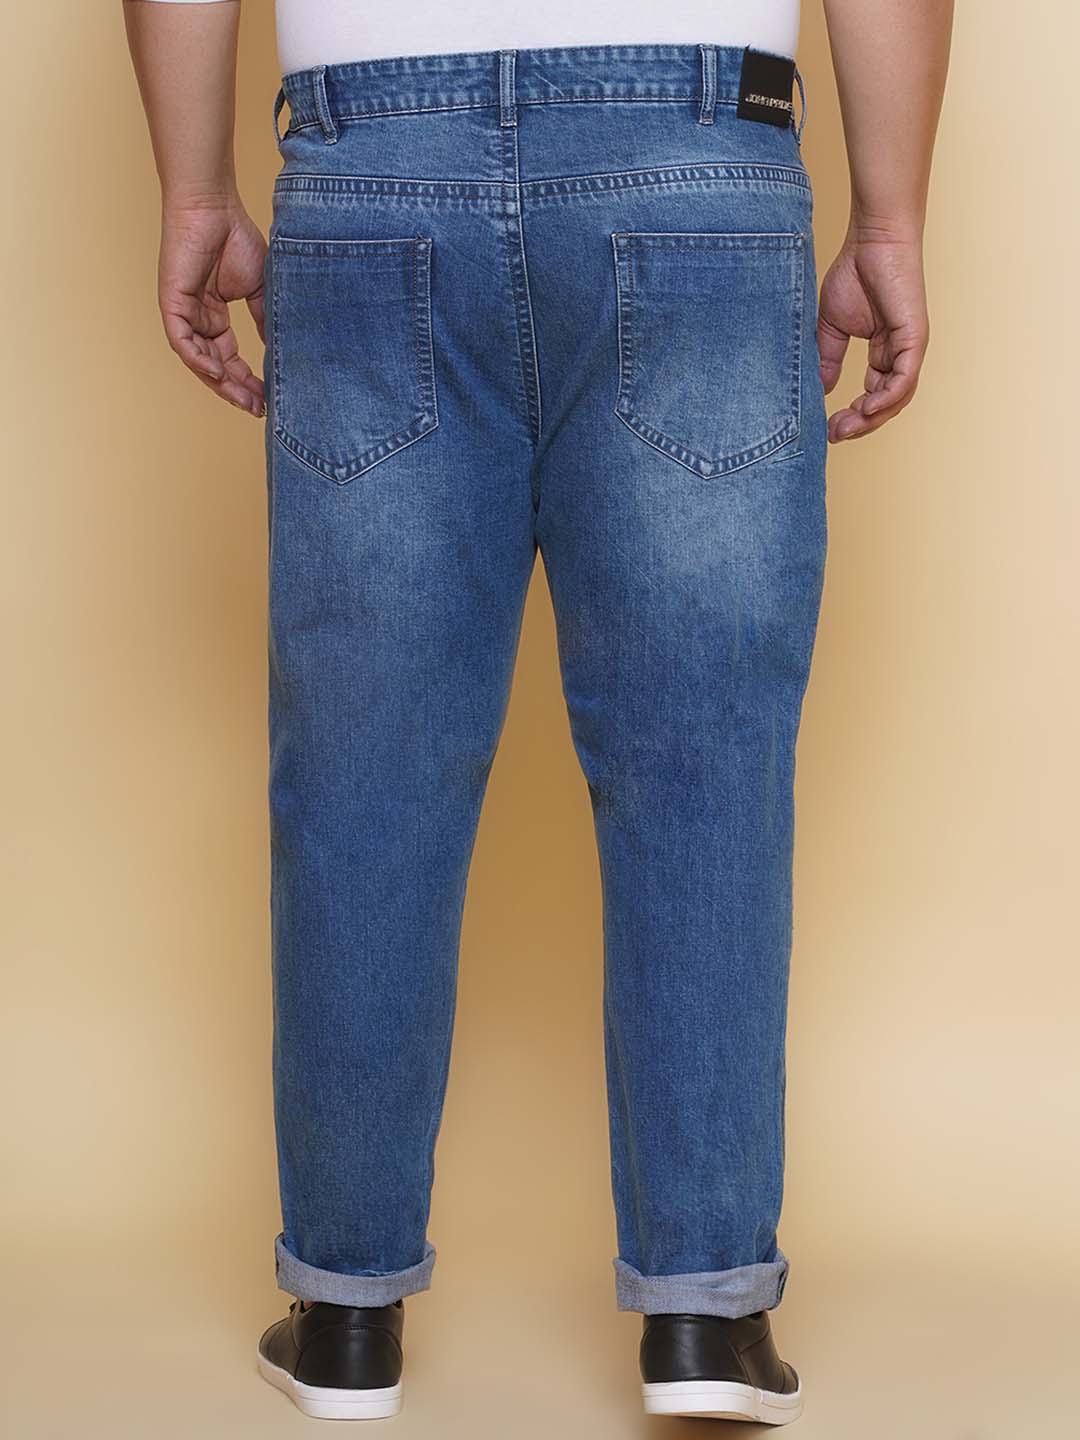 bottomwear/jeans/PJPJ60103/pjpj60103-5.jpg